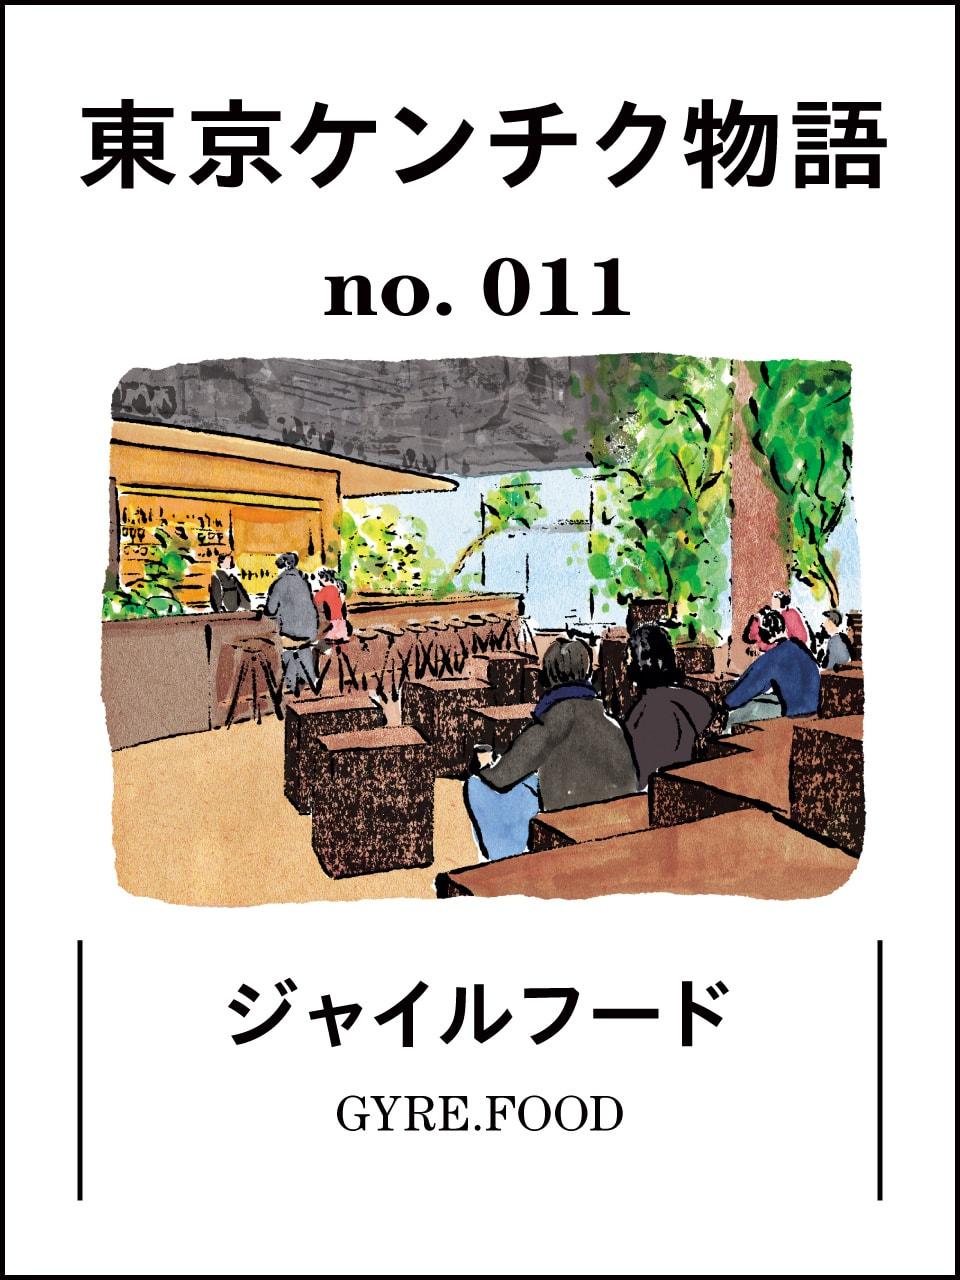 原始の記憶へ誘うレストラン「ジャイル フード」：東京ケンチク物語vol.11